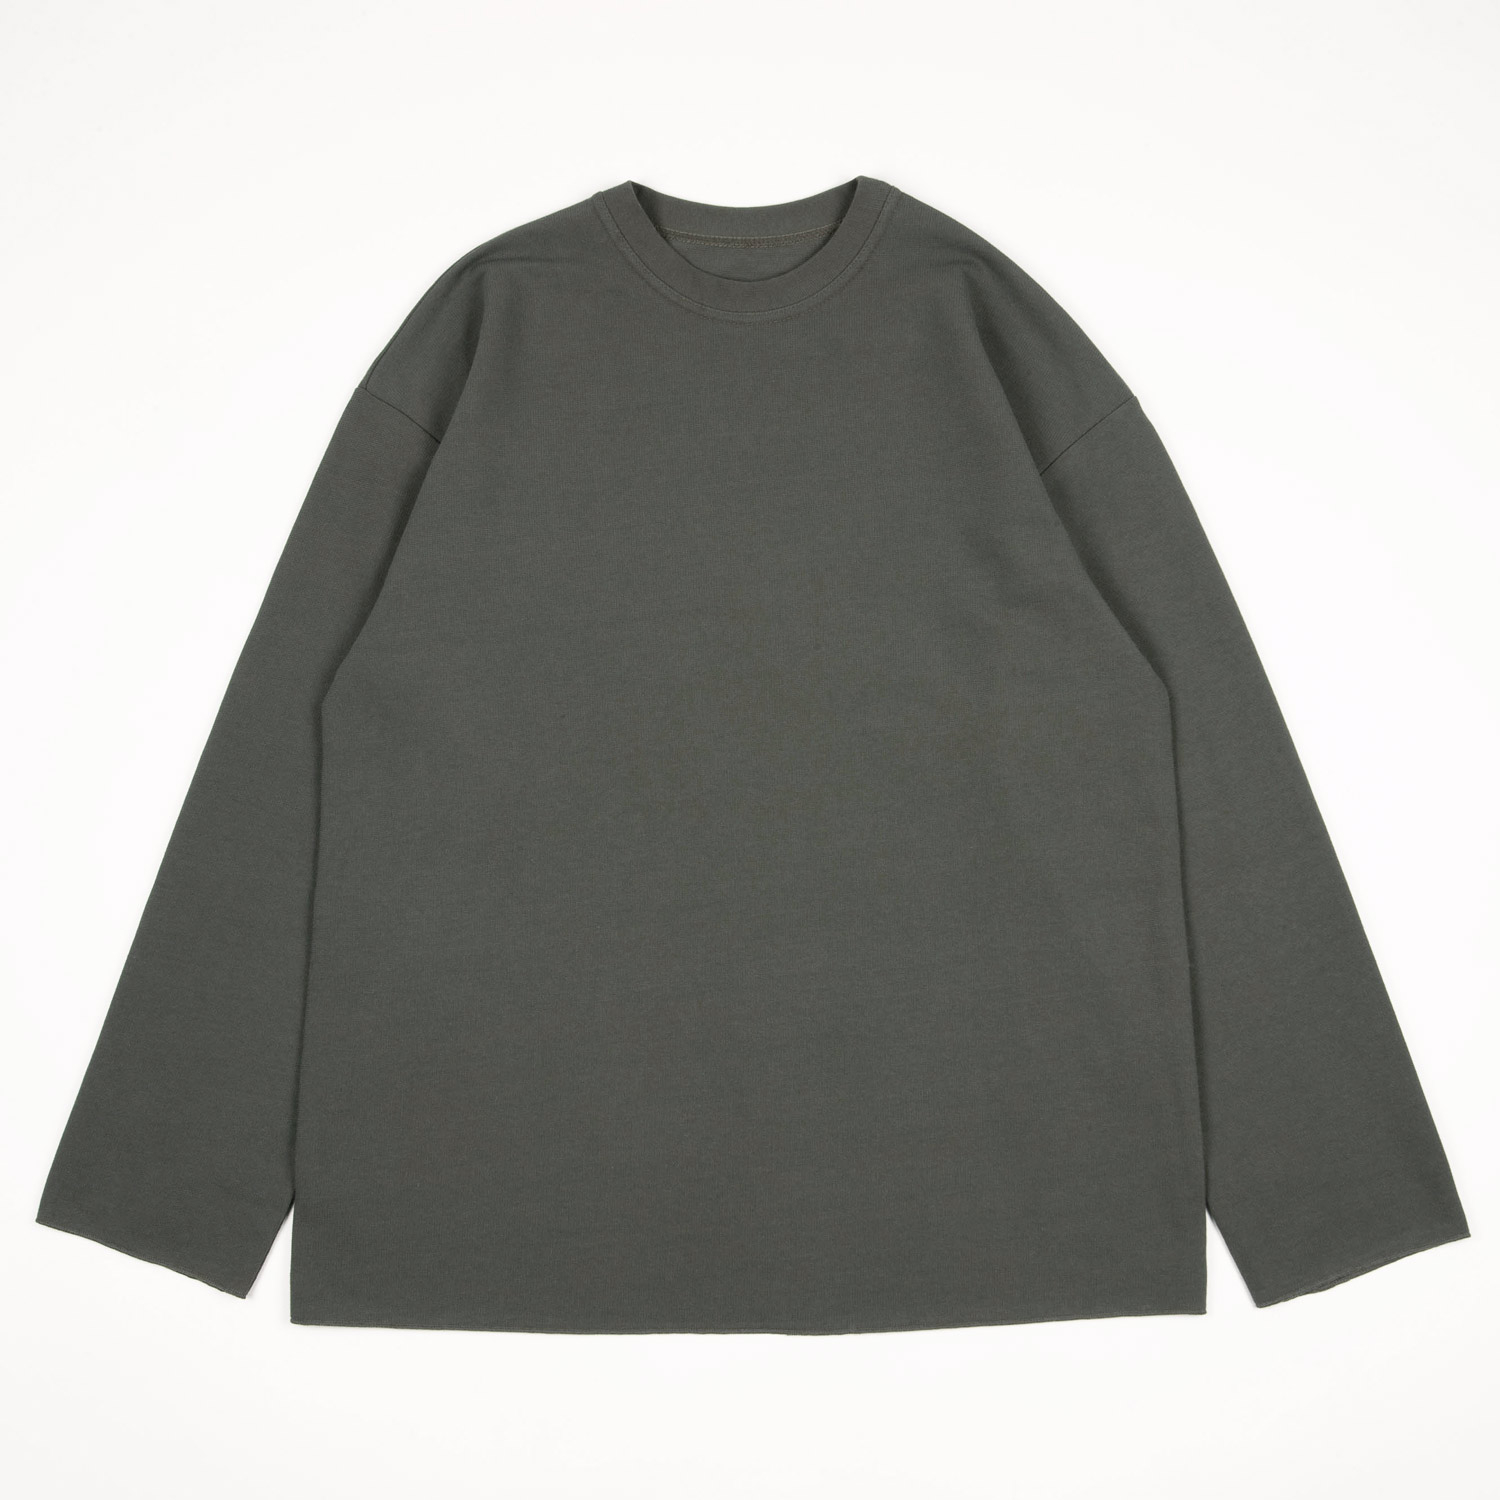 T-shirt MARINE W coloris Vert-de-gris par Arpenteur Women's